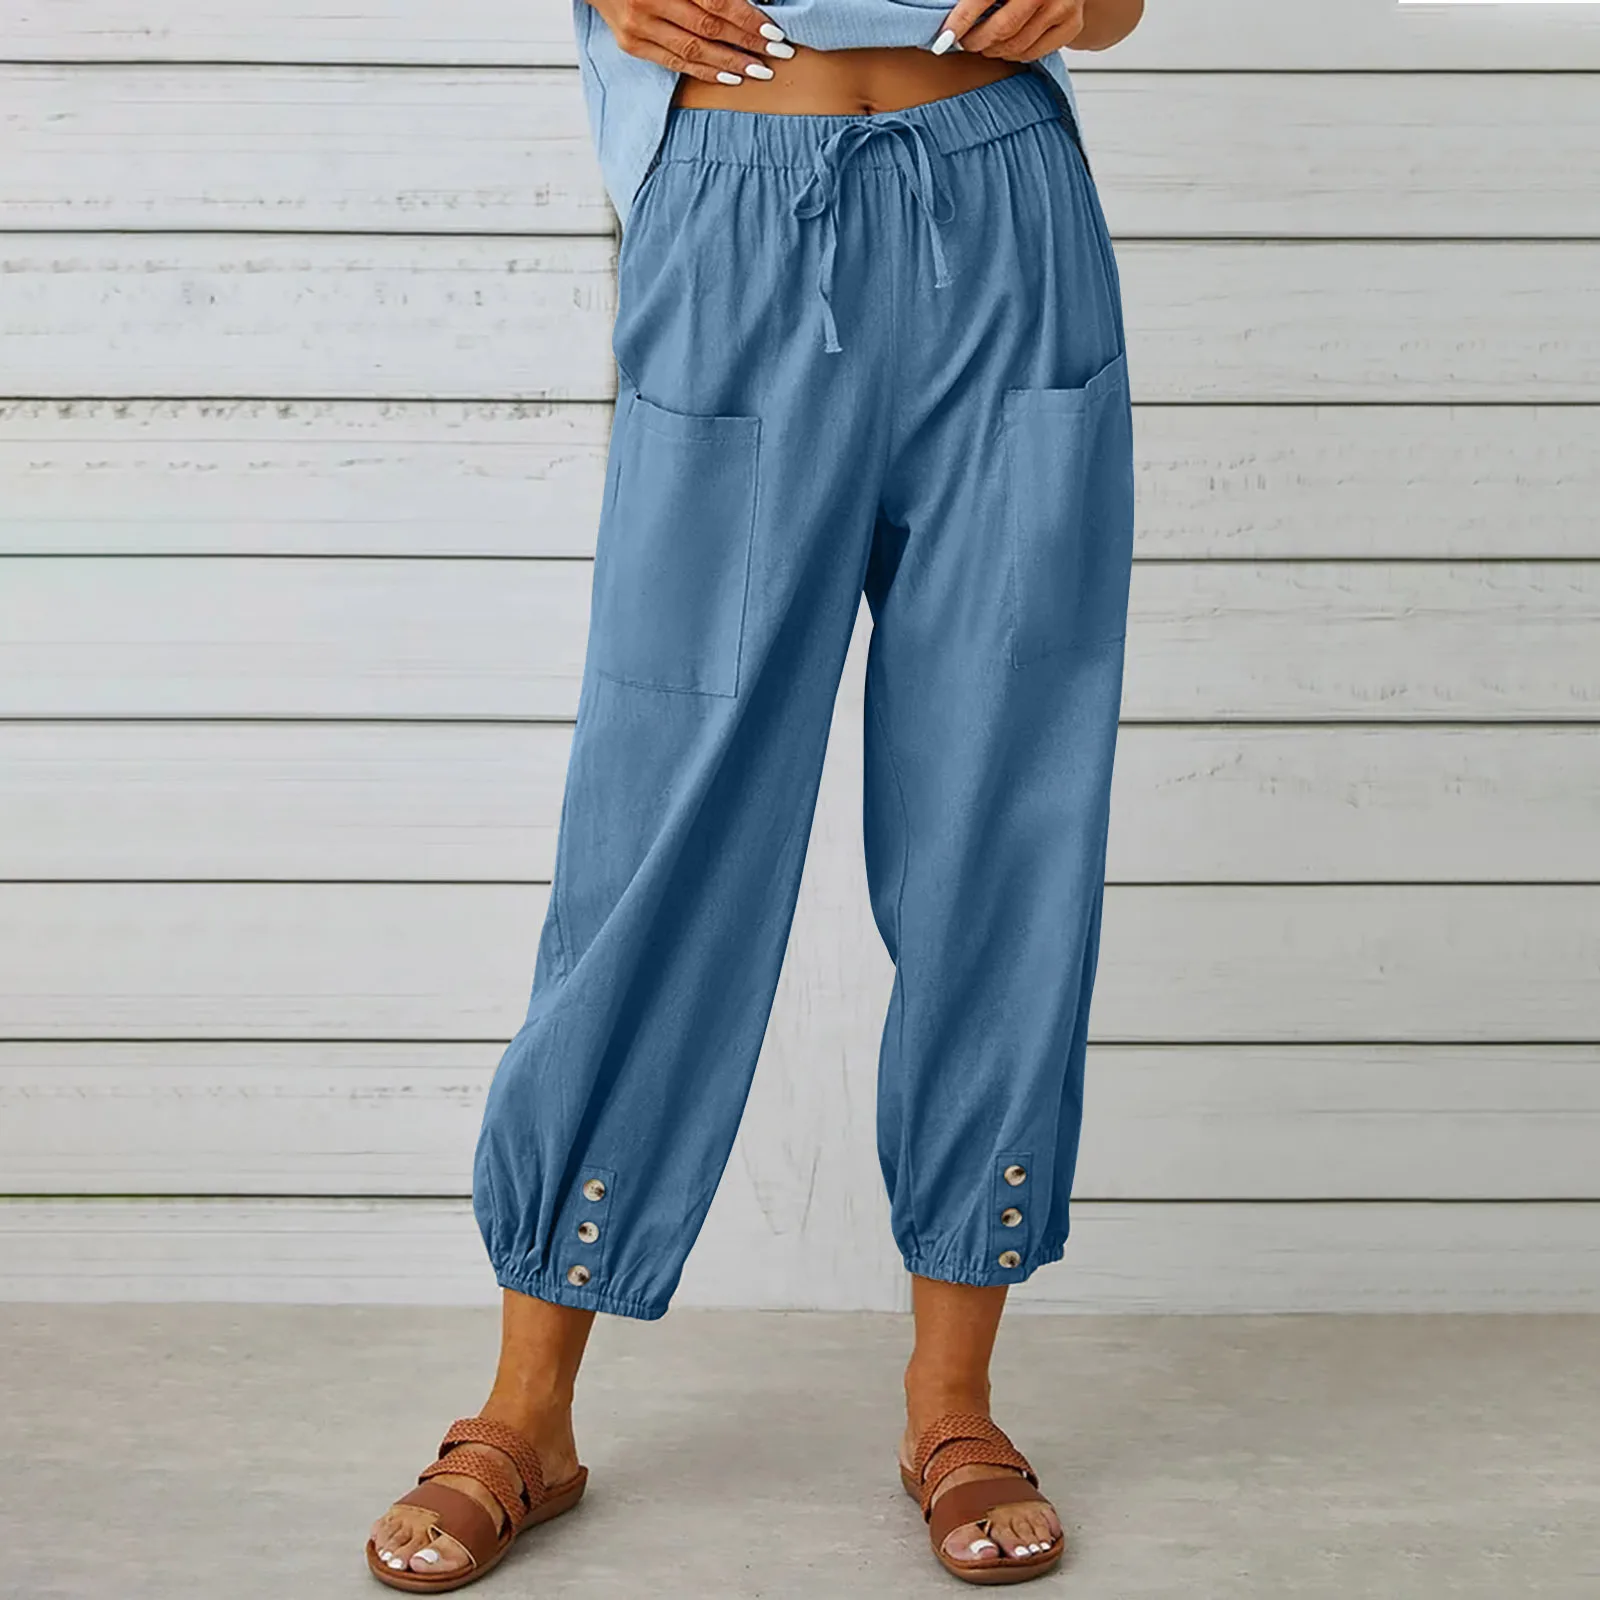 Newest Cotton Linen Pants Women Elegant Trousers Lady Formal Pants Plus Size S-5Xl Famous Brand Design Cotton Trousers Popular